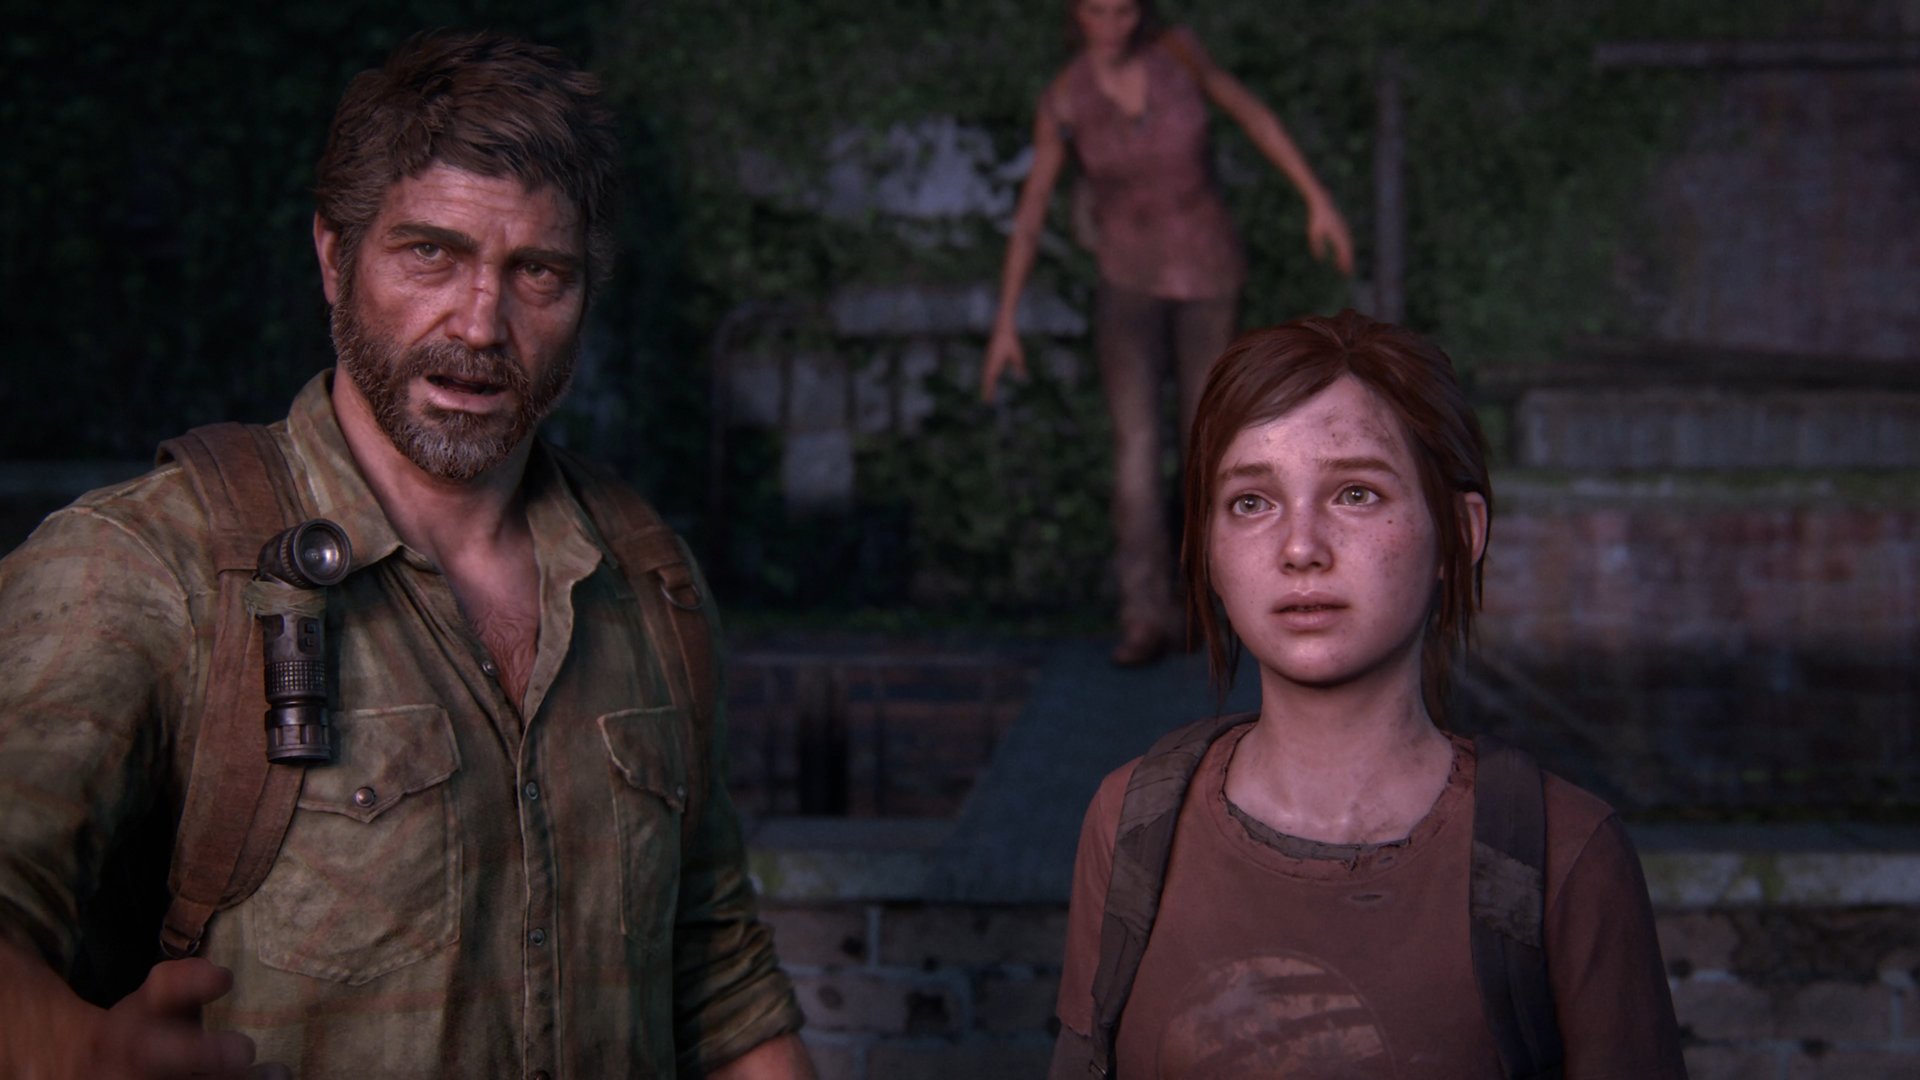 Remake de The Last of Us para PS5 pode ser lançado em 2022, apontam rumores